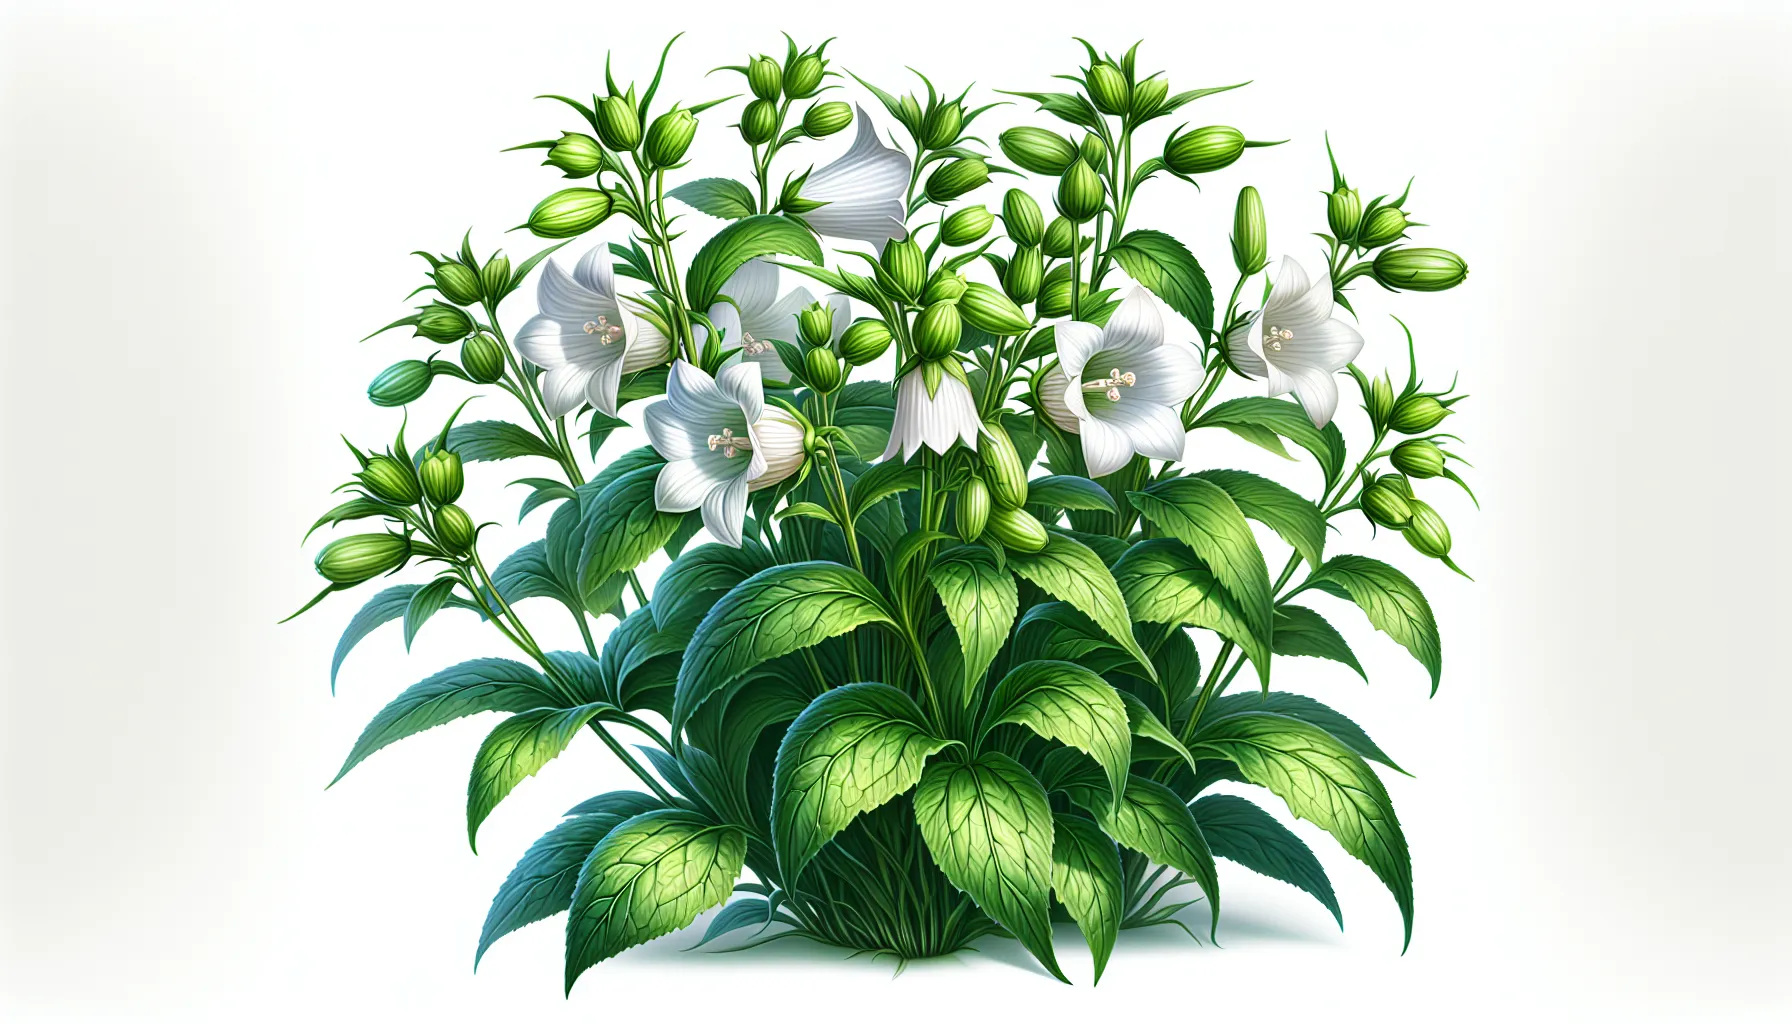 Imagen de una hermosa planta Campanilla china en pleno crecimiento, mostrando sus delicadas flores blancas y sus hojas verdes brillantes, como ejemplo de cuidado adecuado según el artículo.